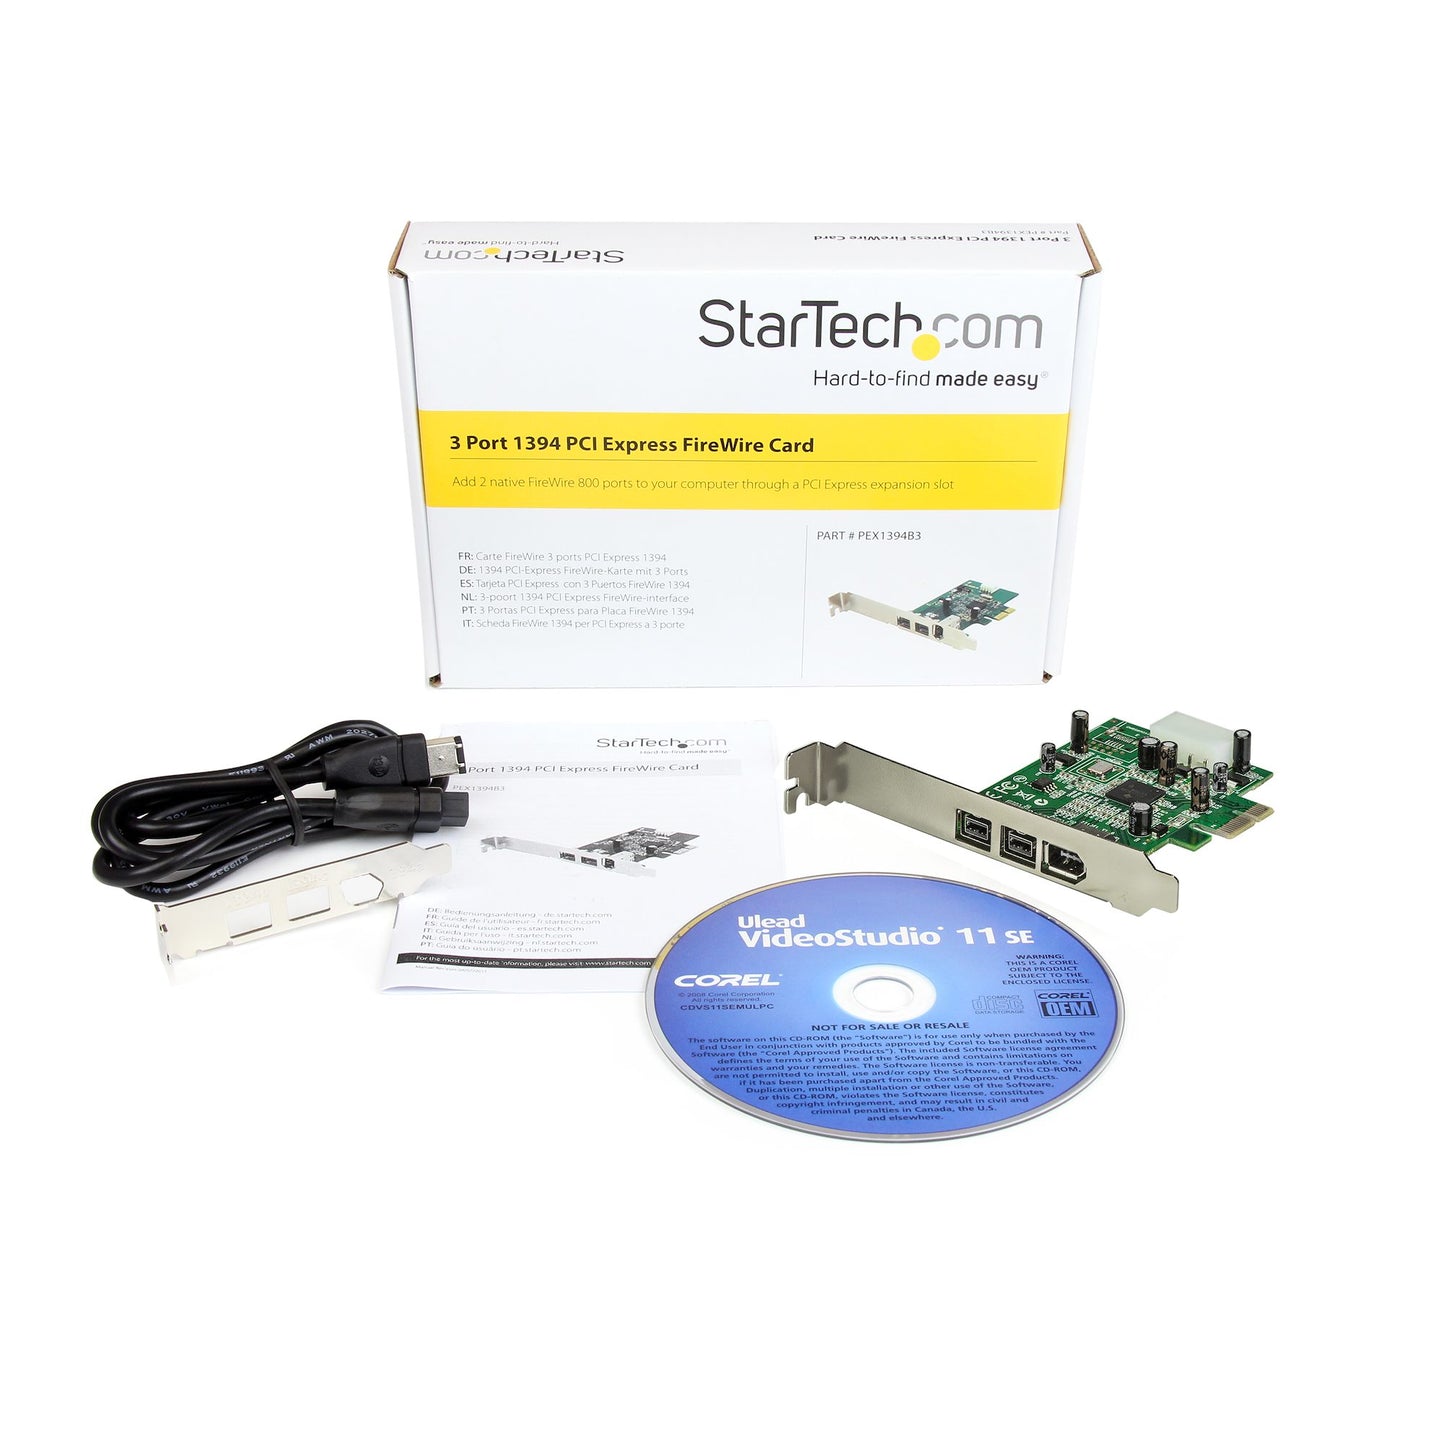 StarTech.com 3 Port 2b 1a 1394 PCI Express FireWire Card Adapter-3